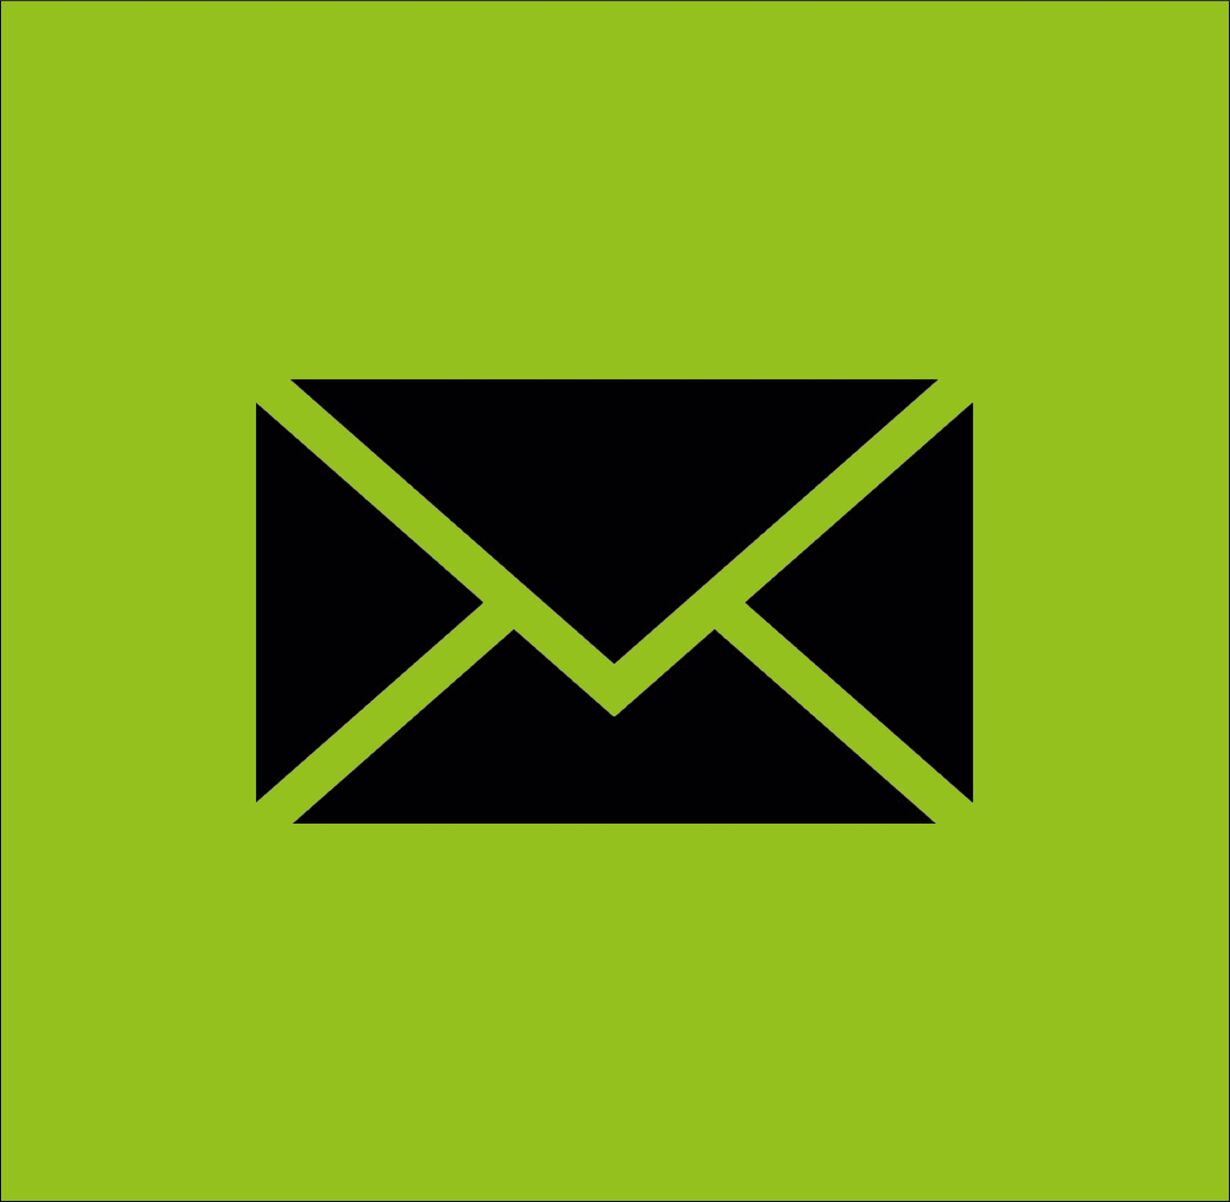 Briefumschlag auf grünem Hintergrund